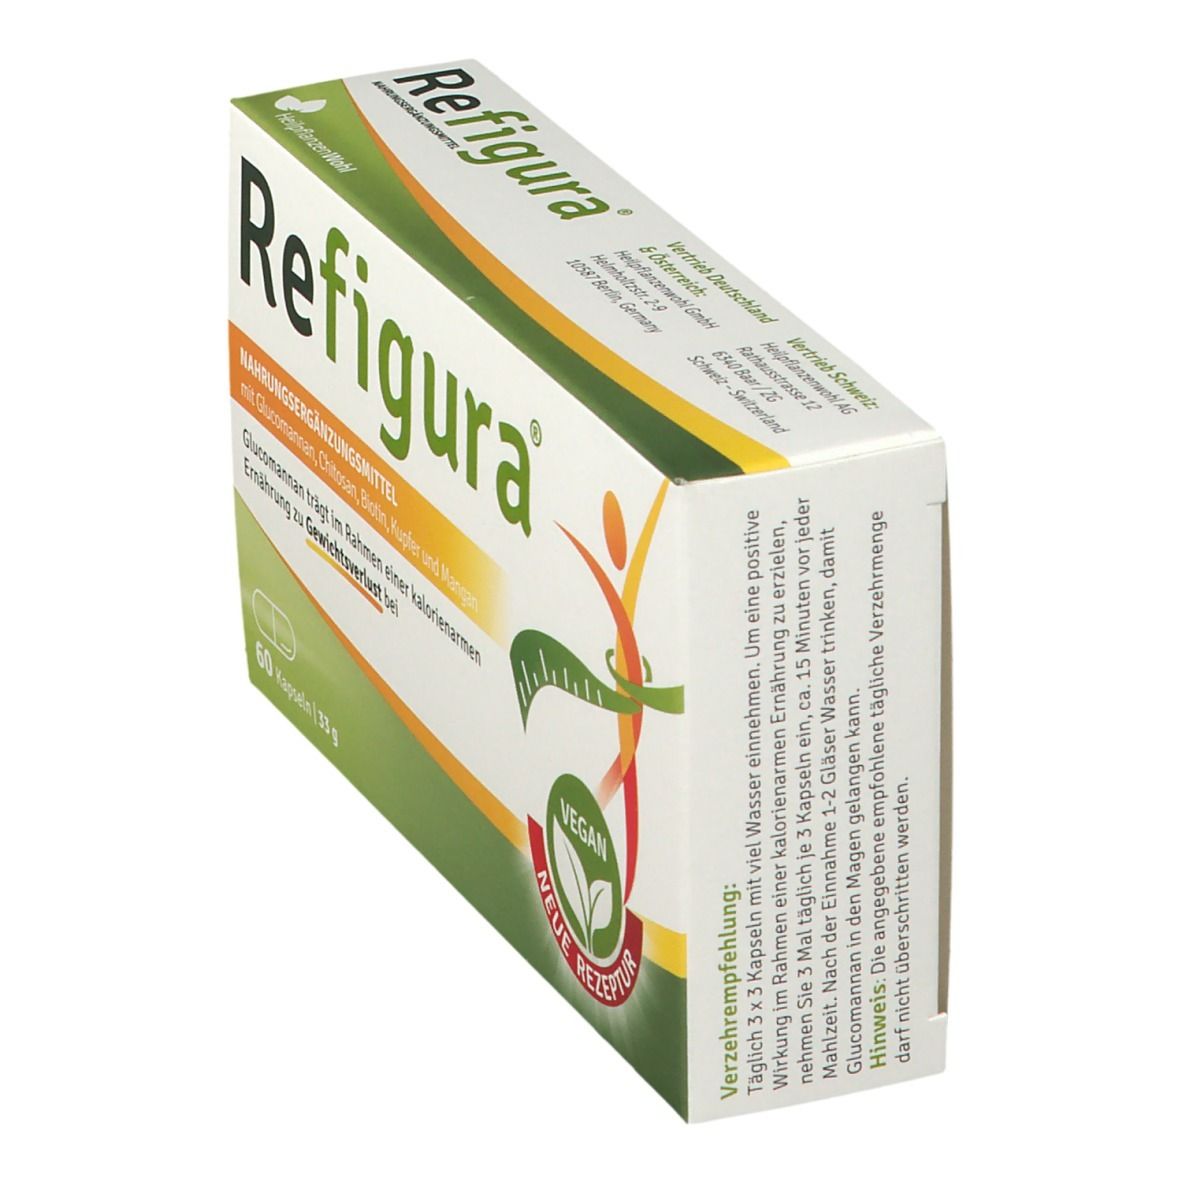 REFIGURA® Kapseln - Unterstützung beim Gewichtsverlust vegan